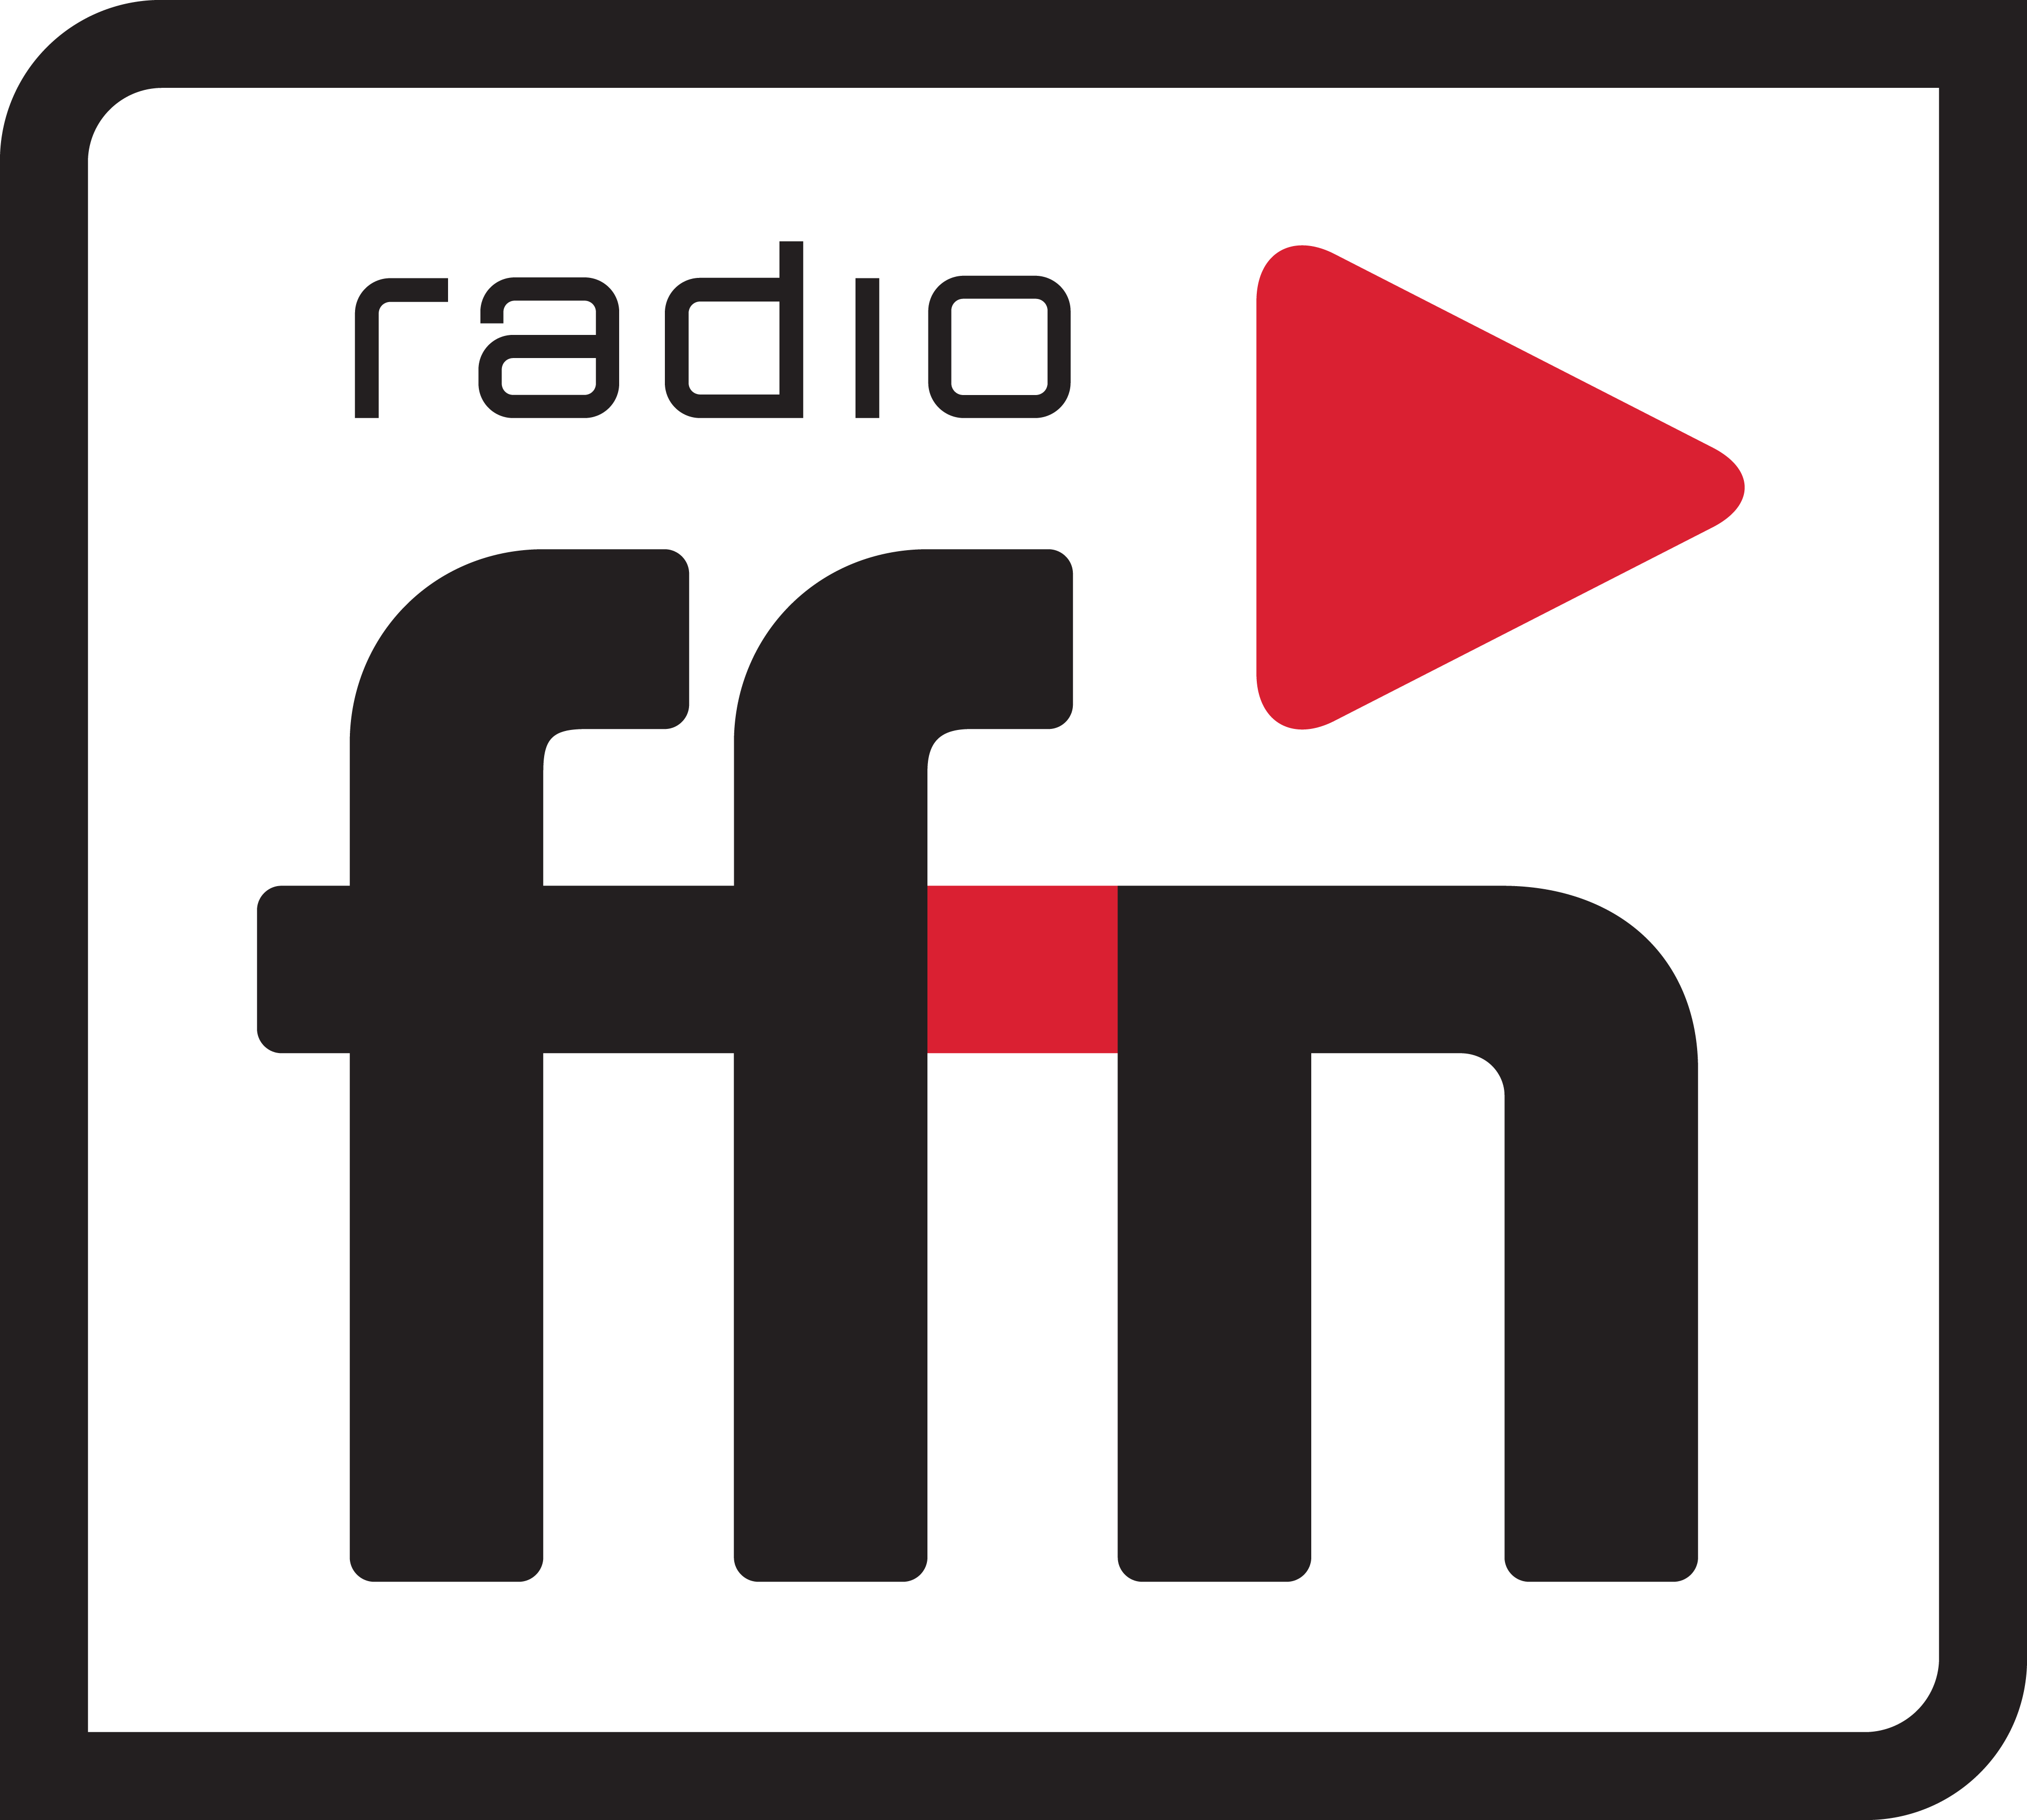 Von radio ffn - radio ffn / Marketing, CC BY-SA 3.0, https://commons.wikimedia.org/w/index.php?curid=38930517